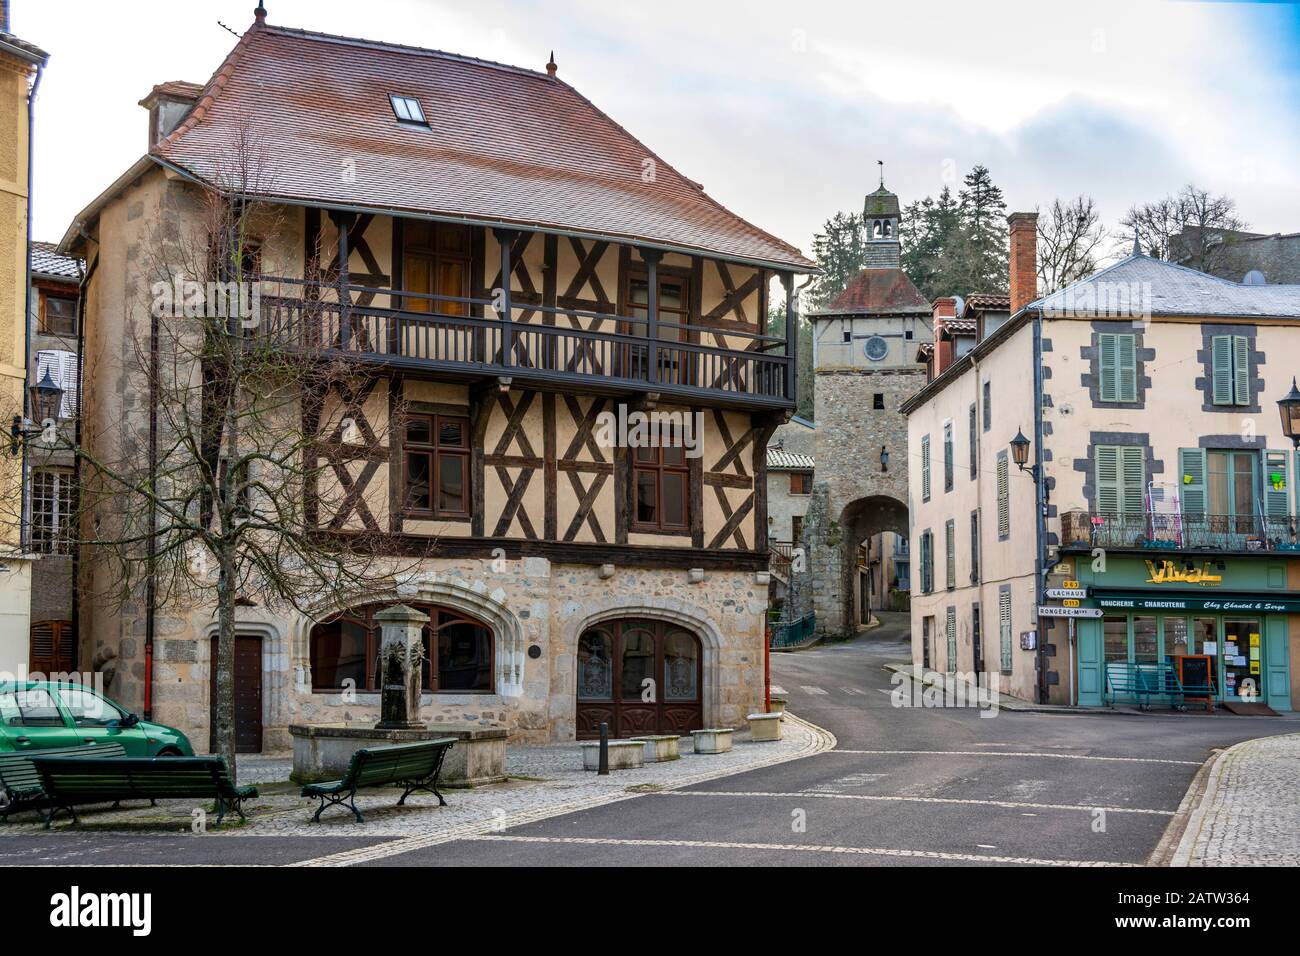 'Les maisons de pierre' Village of Chateldon, half timbering , houses, Livradois Forez natural park, Puy de Dome, Auvergne, France, Europe Stock Photo